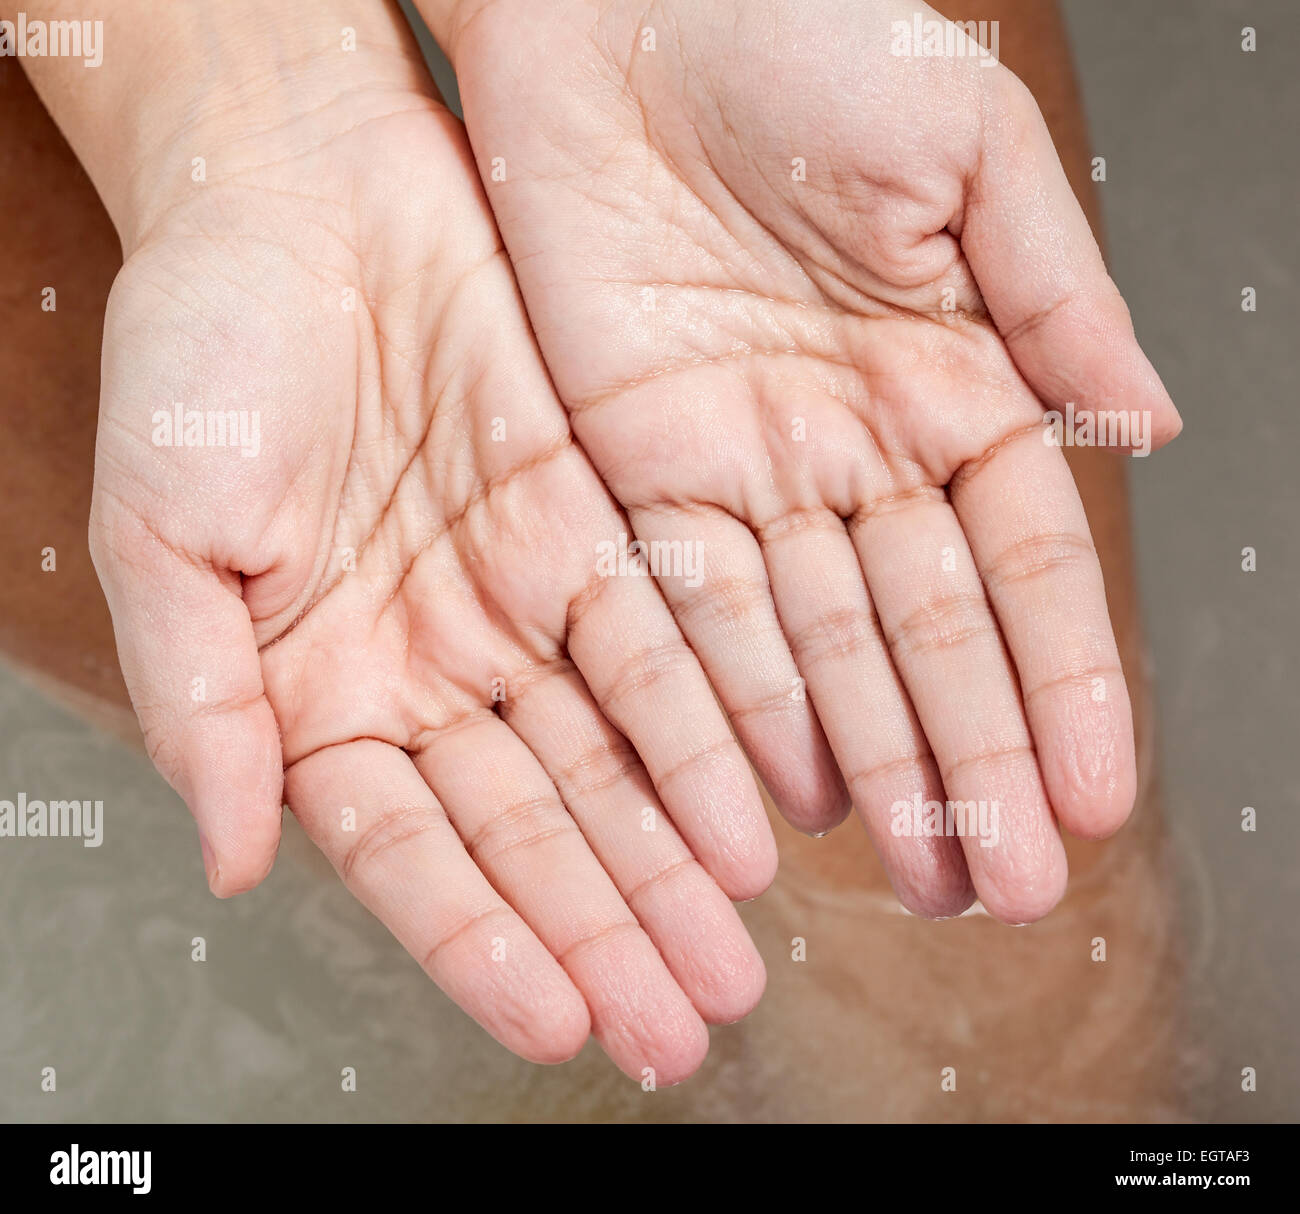 Pelle rugosa delle mani a causa del lungo periodo di tempo in acqua. Foto Stock